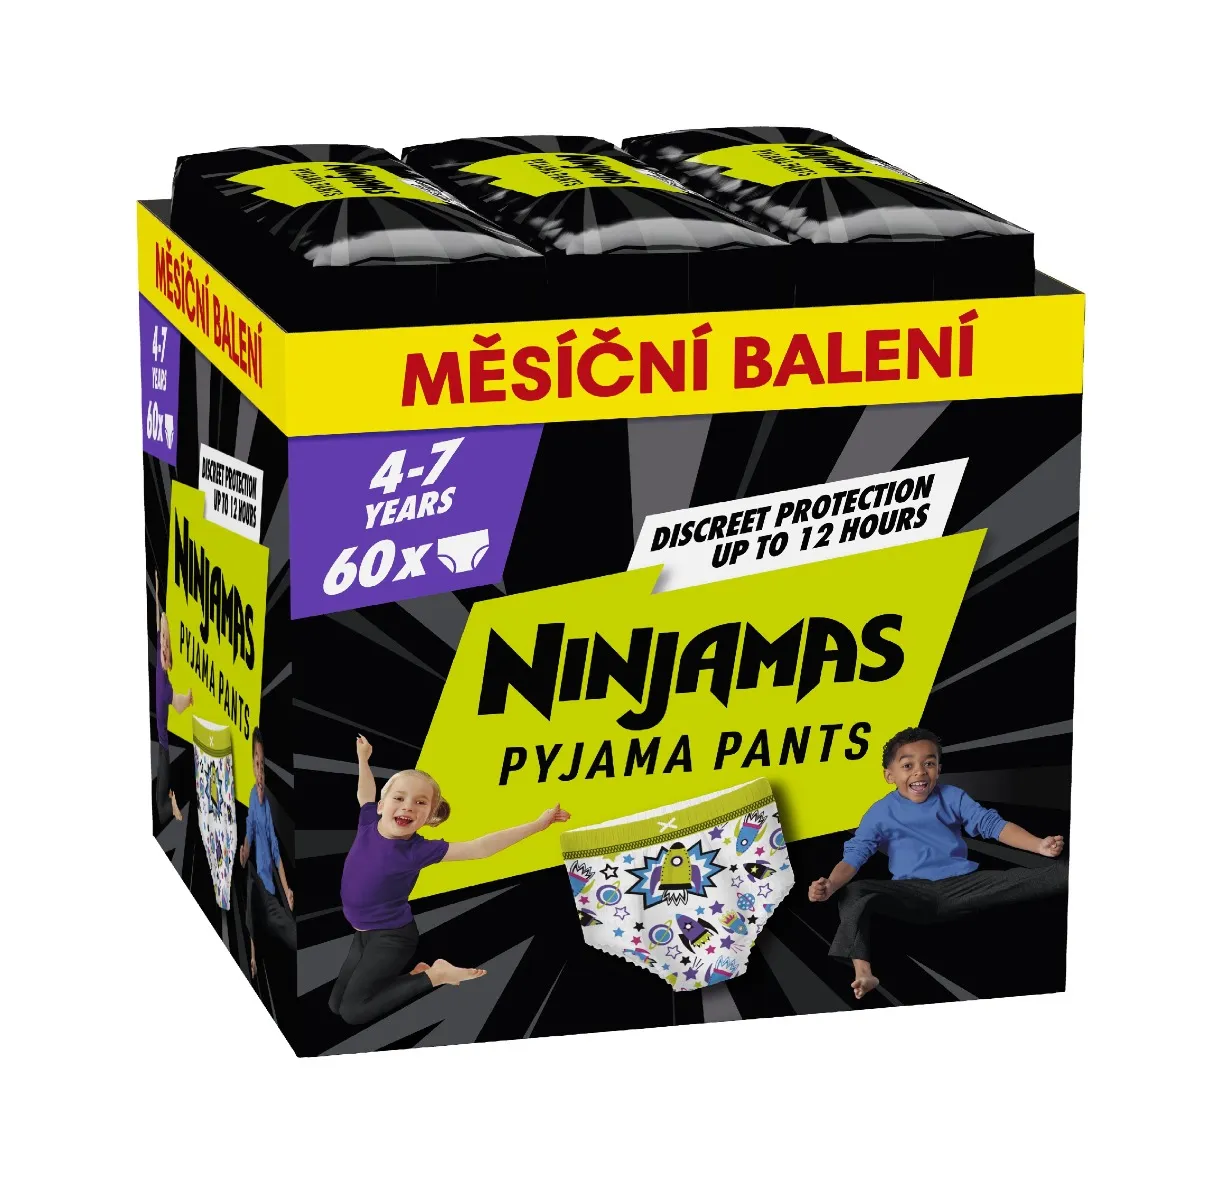 Ninjamas Pyjama Pants kosmické lodě 4–7 let pyžamové kalhotky 60 ks